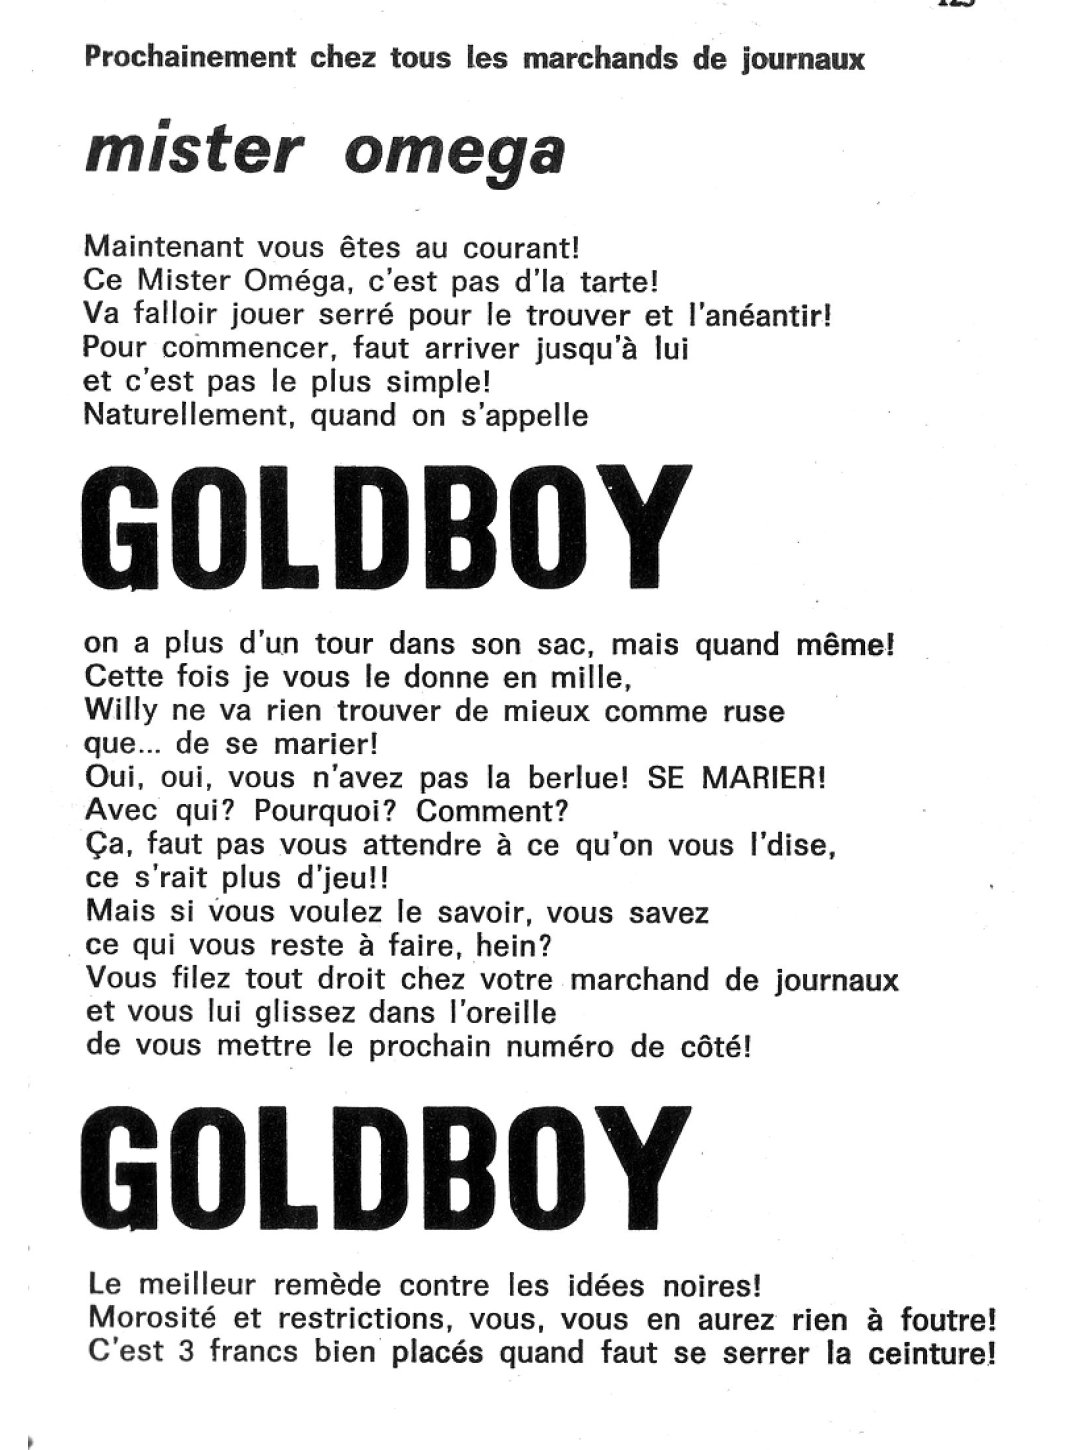 GOLDBOY 037 - Recherchez Goldboy numero d'image 122